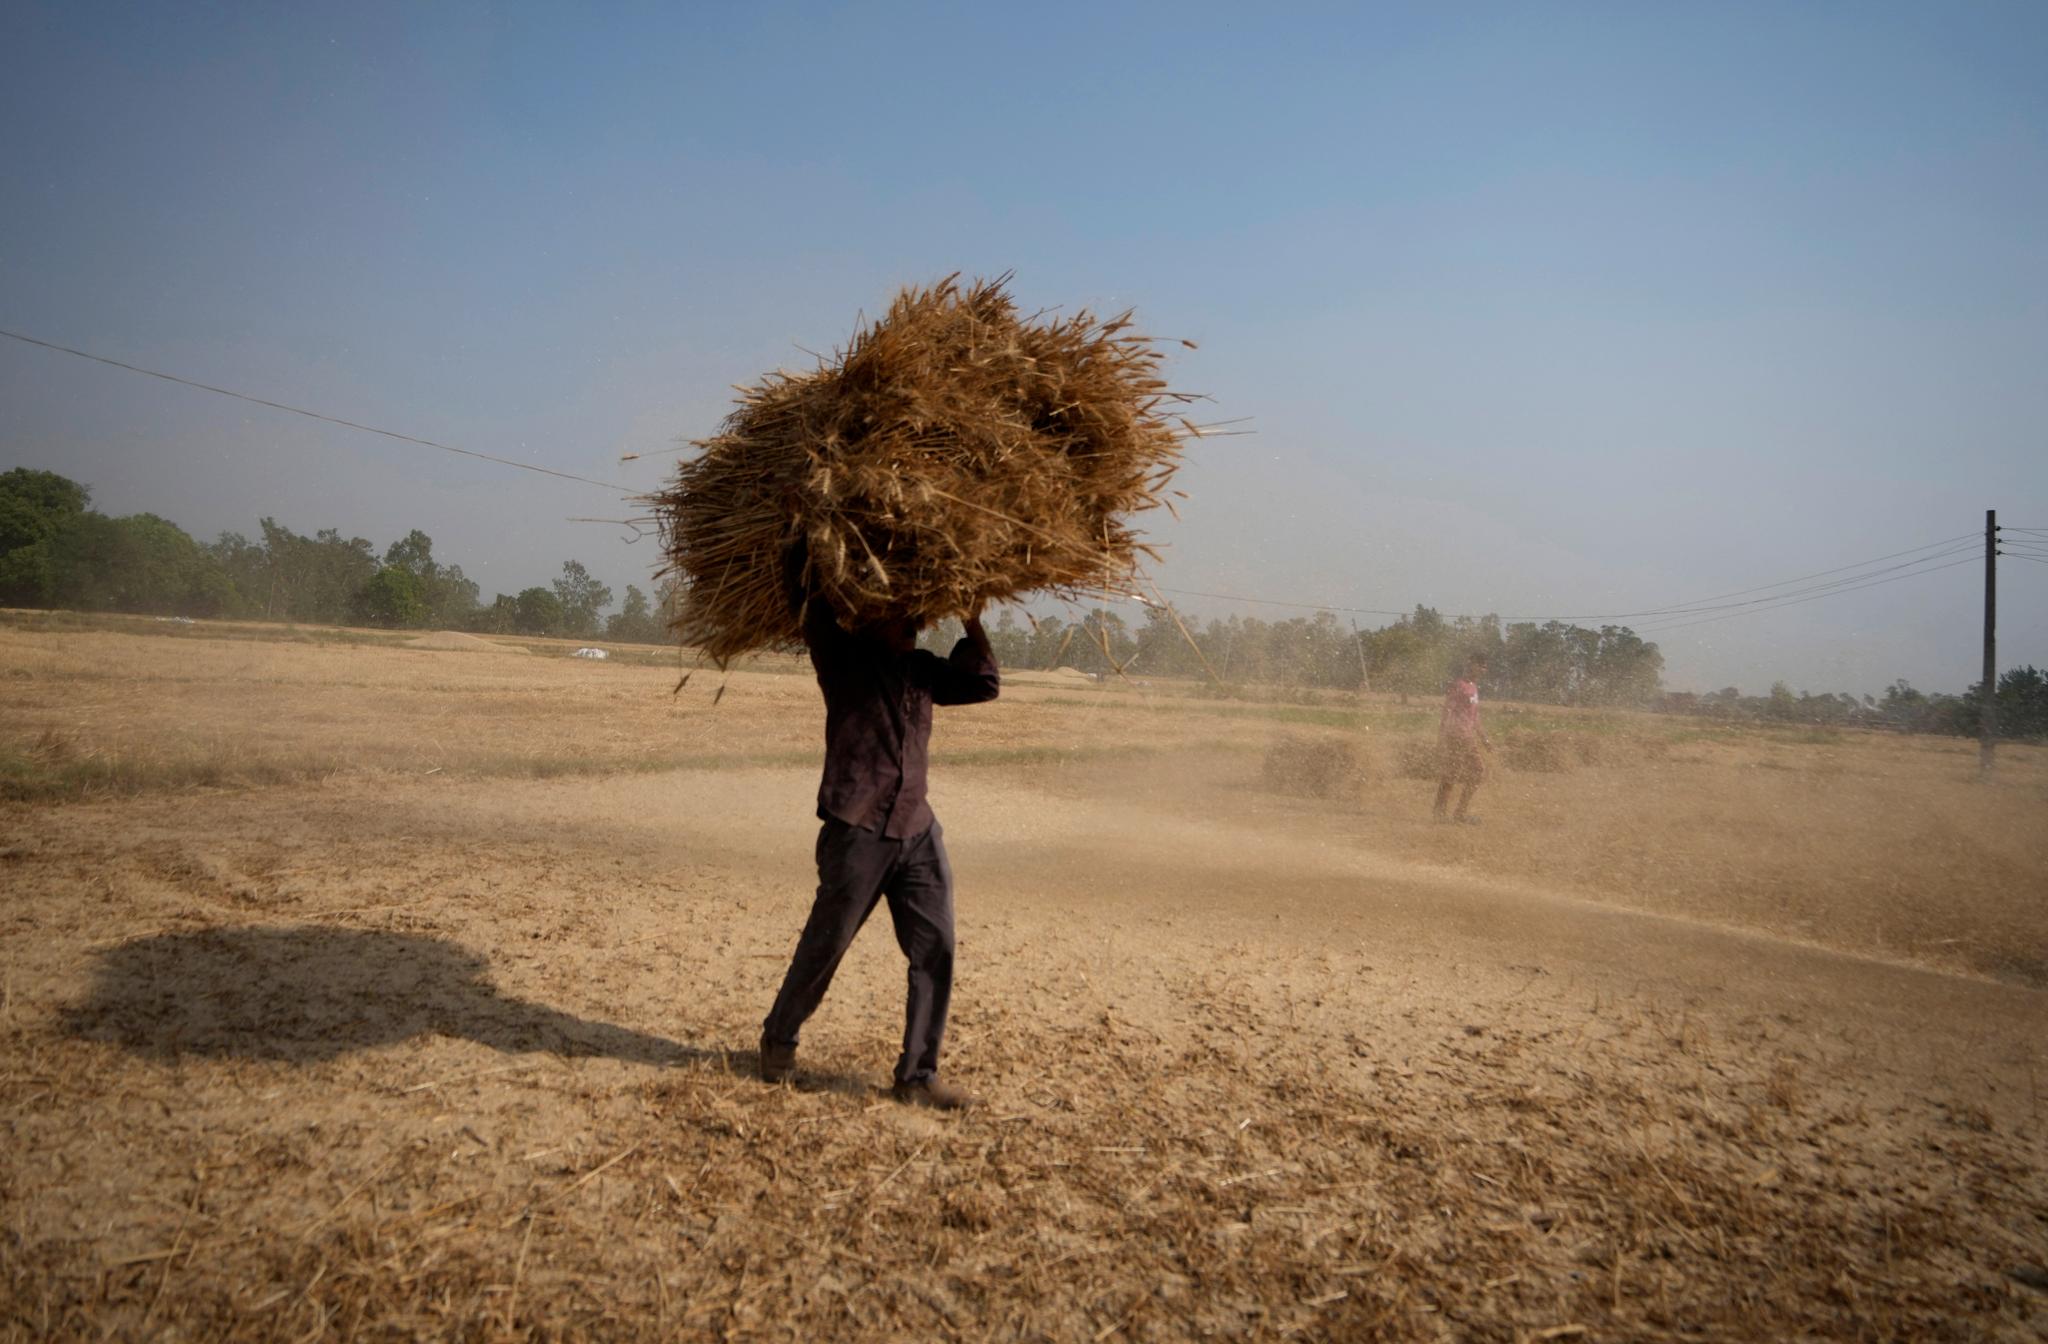 I april høstet denne indiske bonden åkeren sin. Årets hetebølge kom tidligere og ble kraftigere enn vanlig. Det truer avlingen.